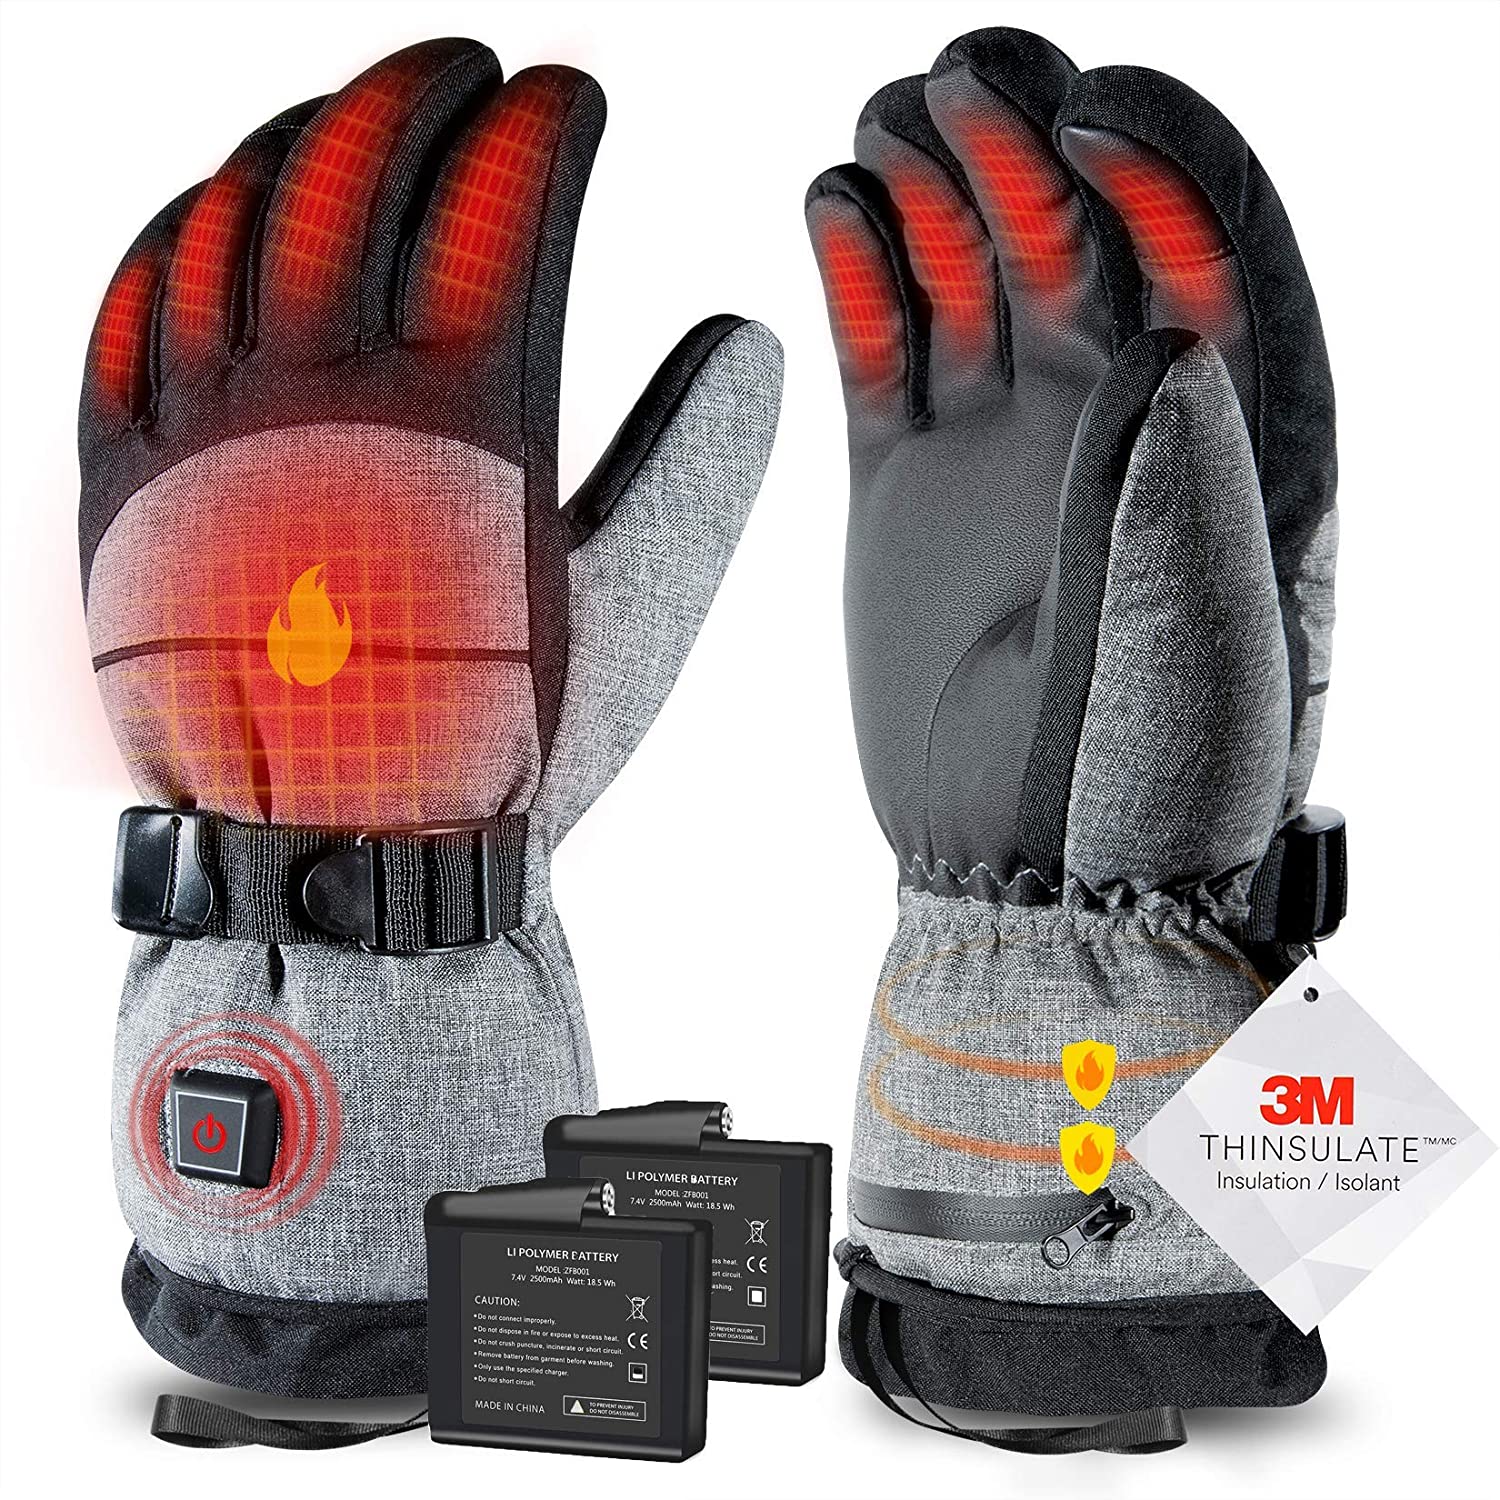 Forceflex® MultiTask D3o® Gloves, Anti-Shock Gloves